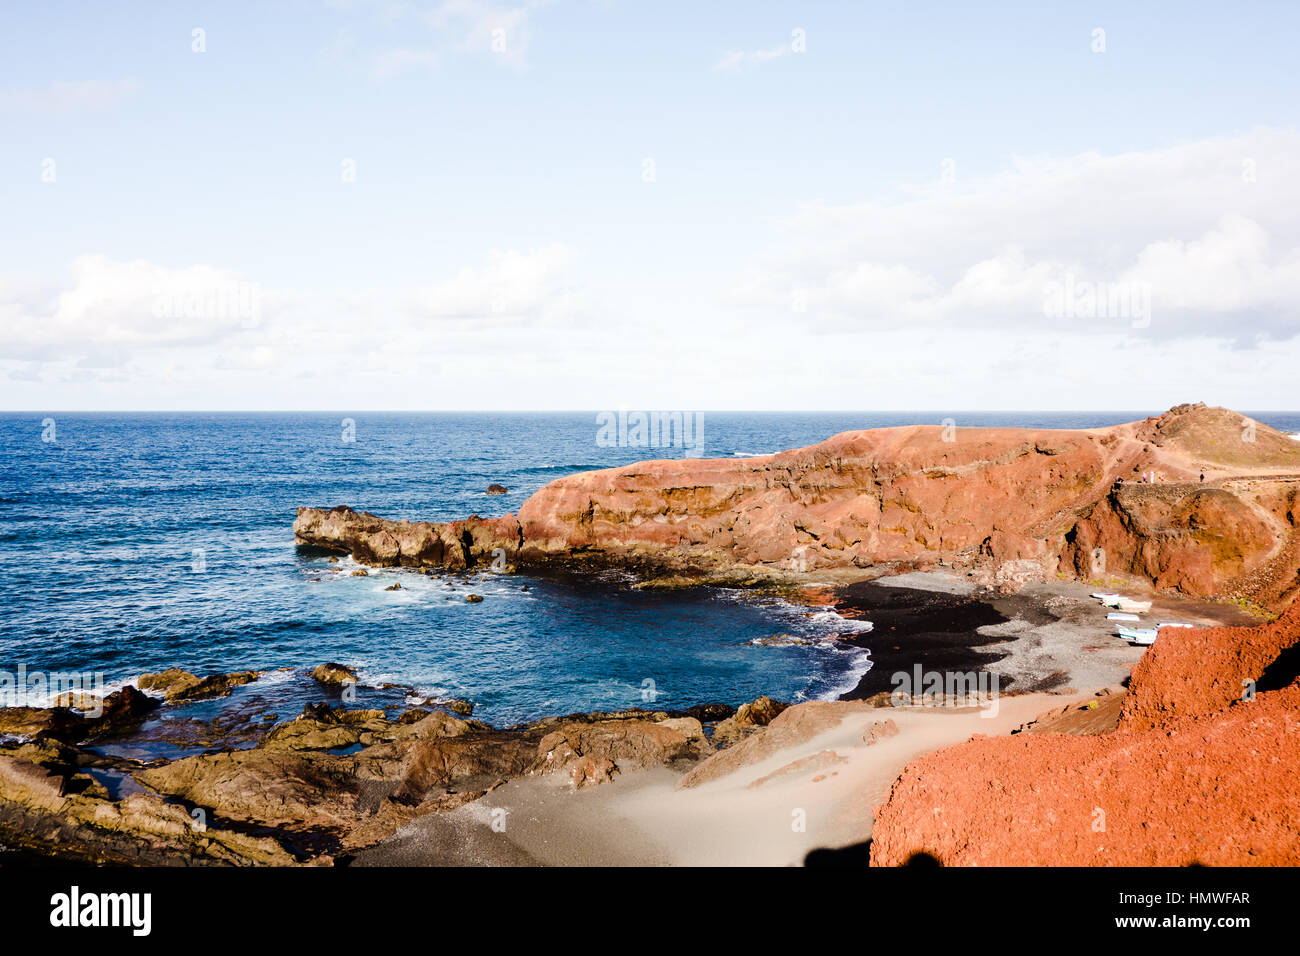 Beautiful view of the sea from Charco de los Clicos in El Golfo, Lanzarote. Stock Photo